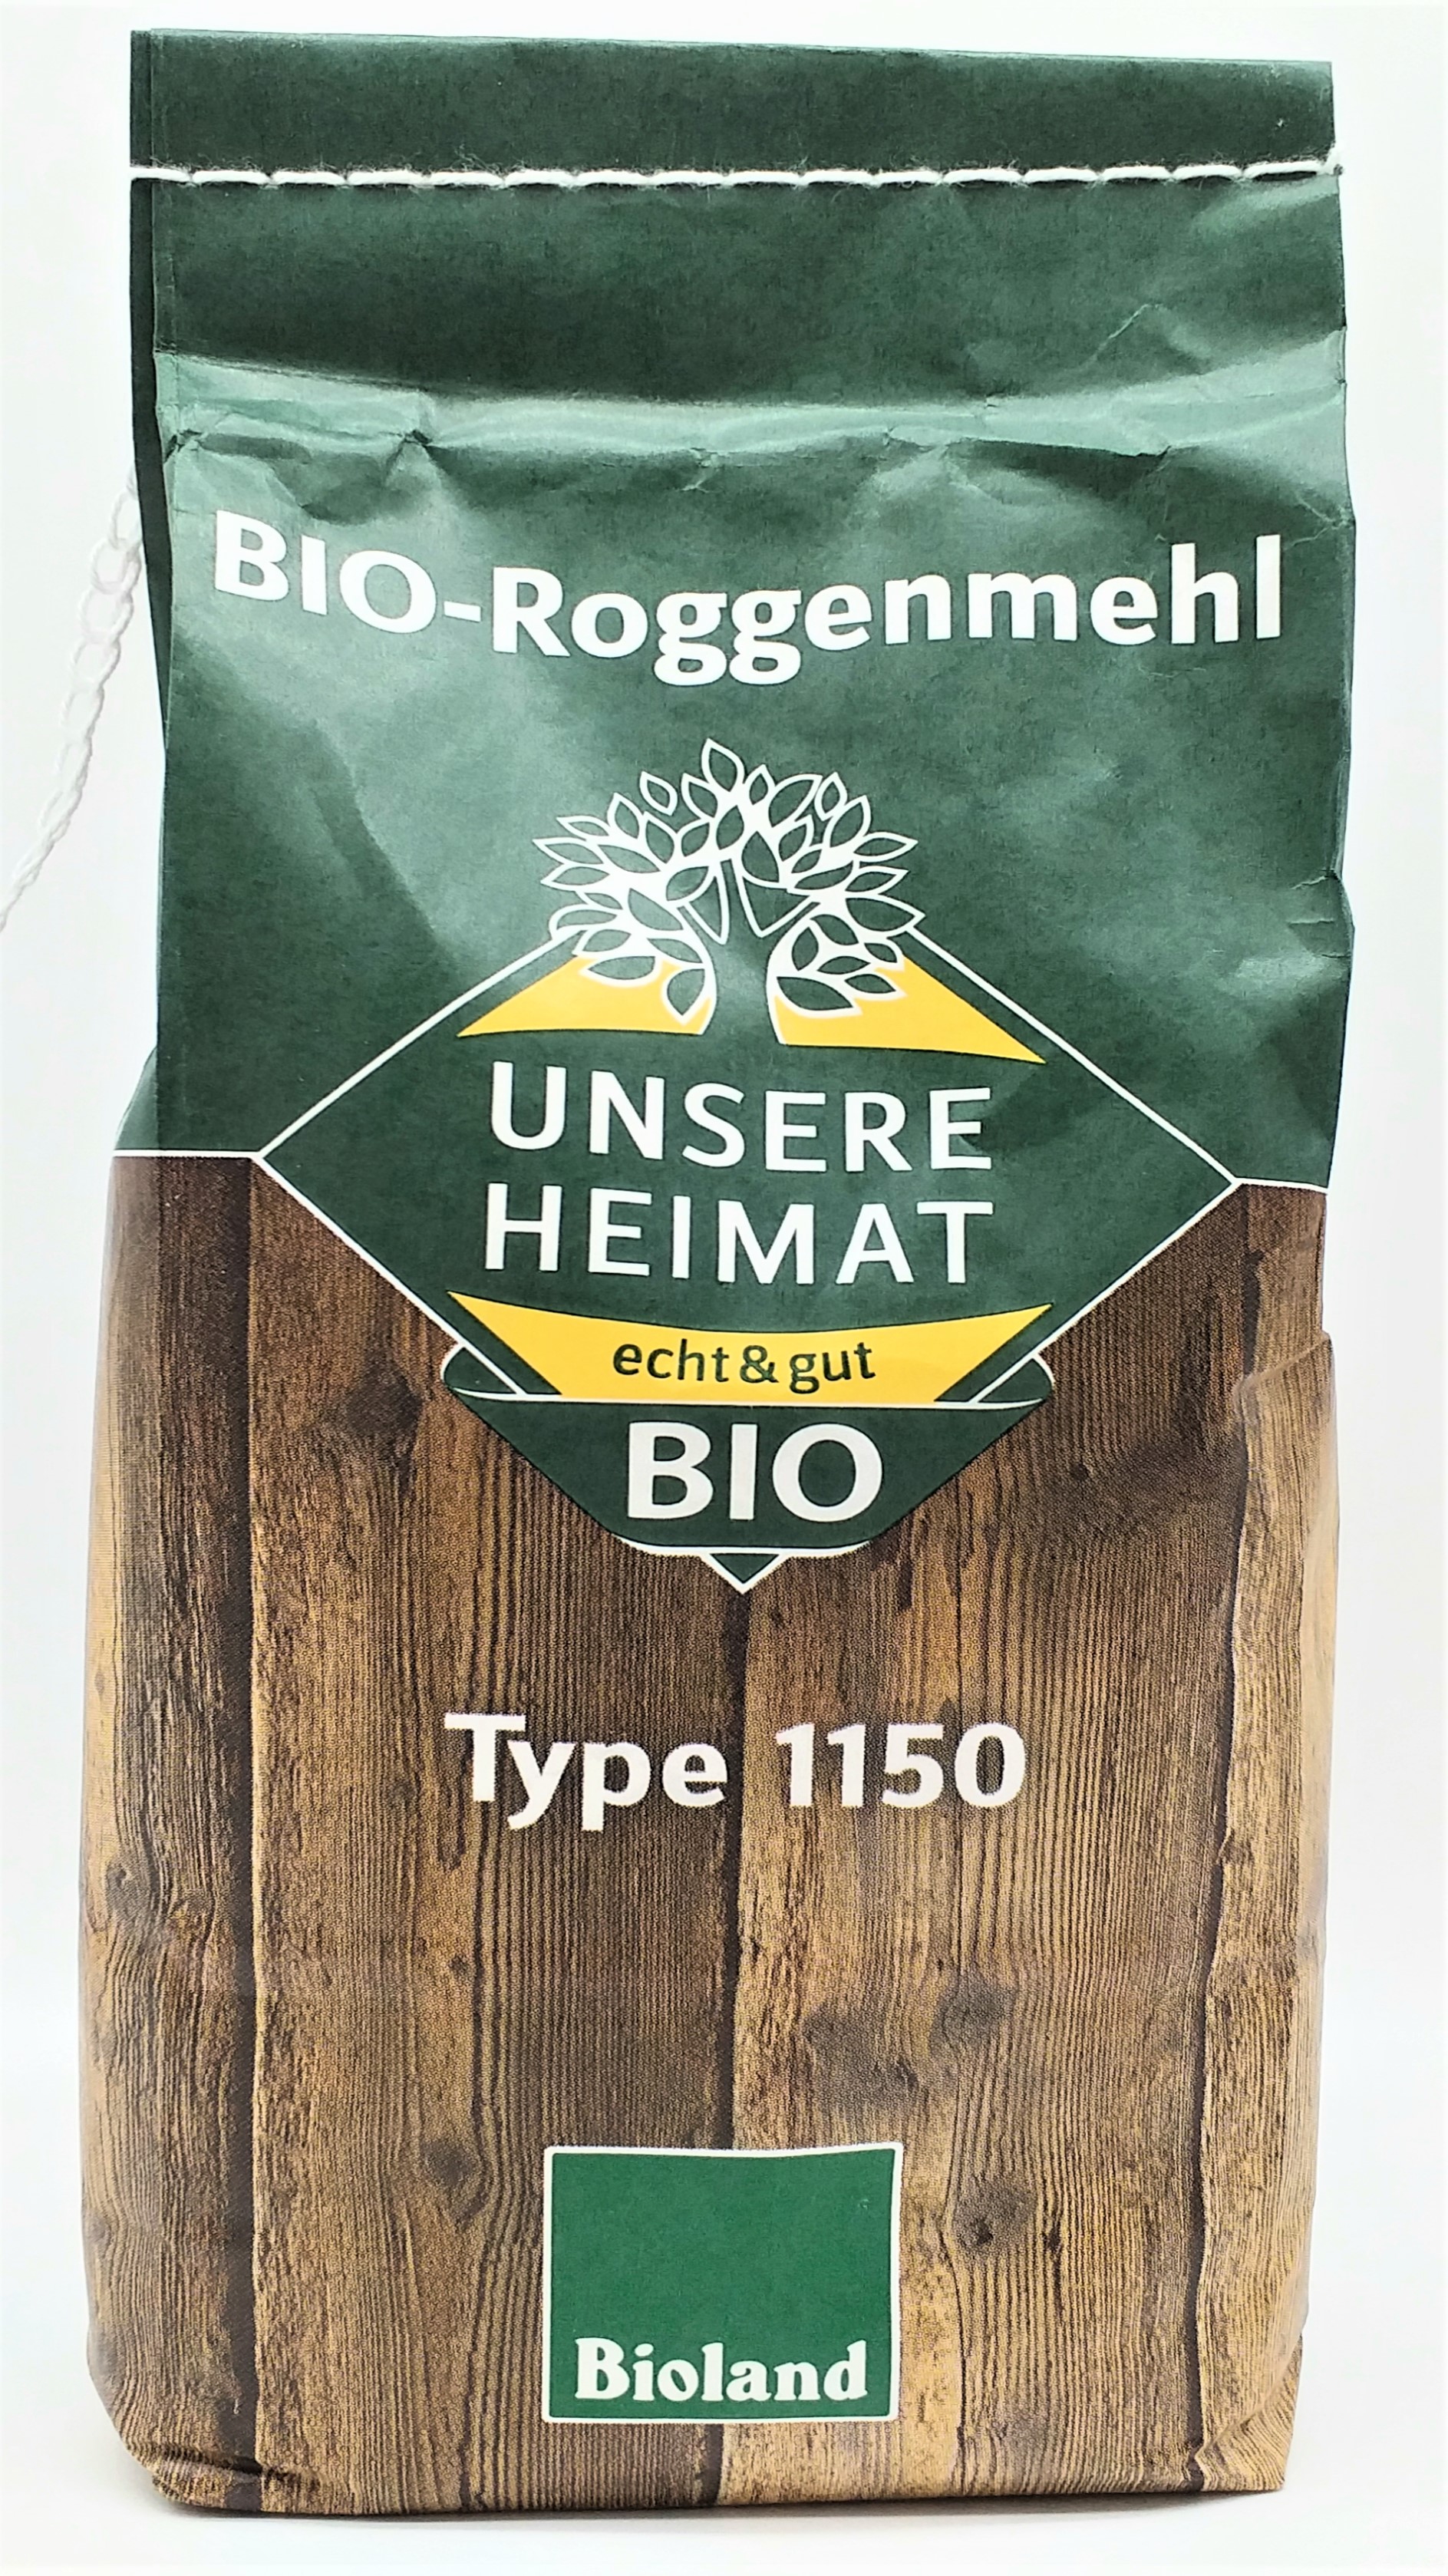 Bioland Unsere Heimat Roggenmehl Type 1150 1kg